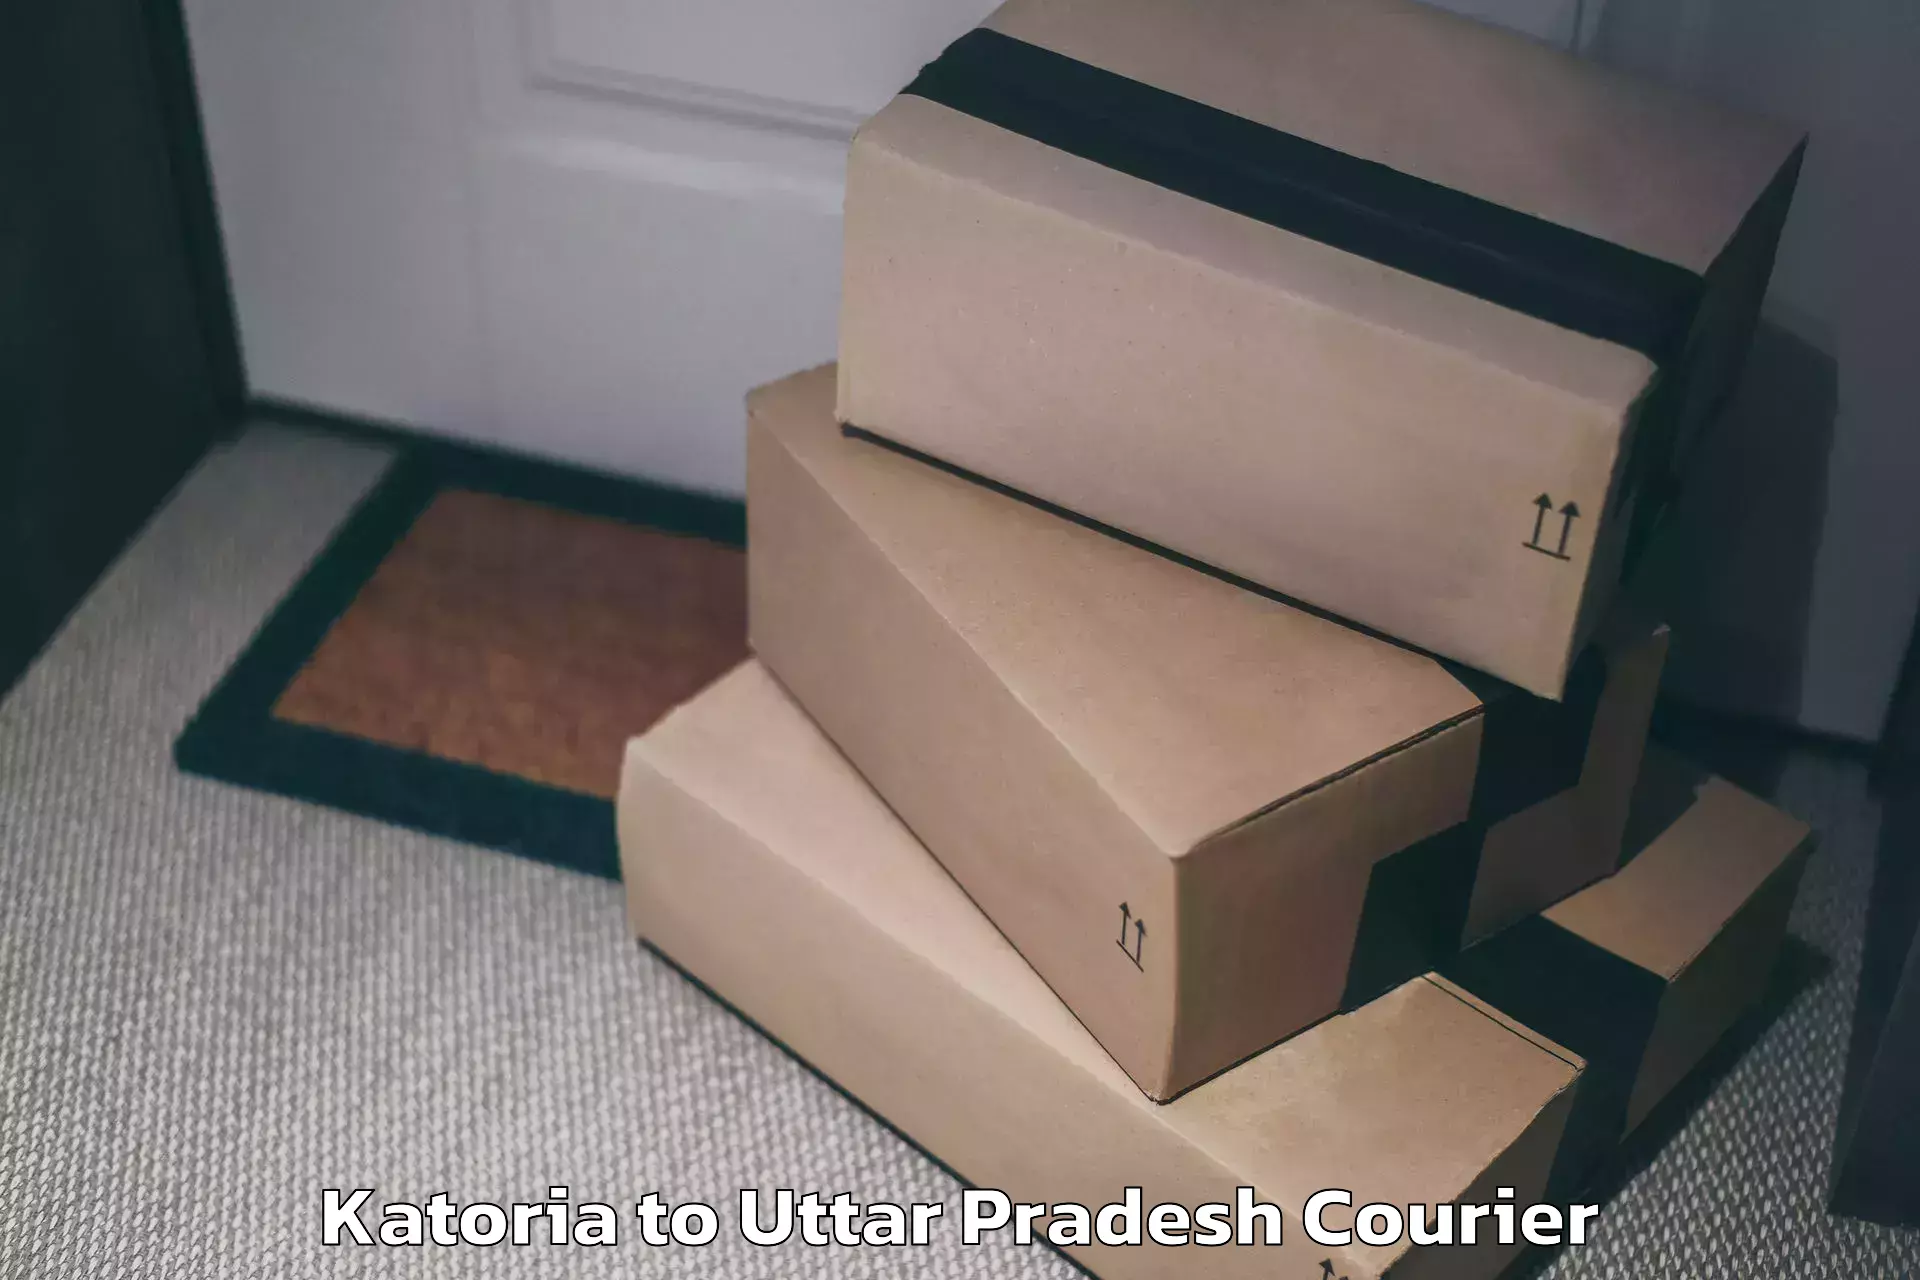 Express luggage delivery Katoria to Noida